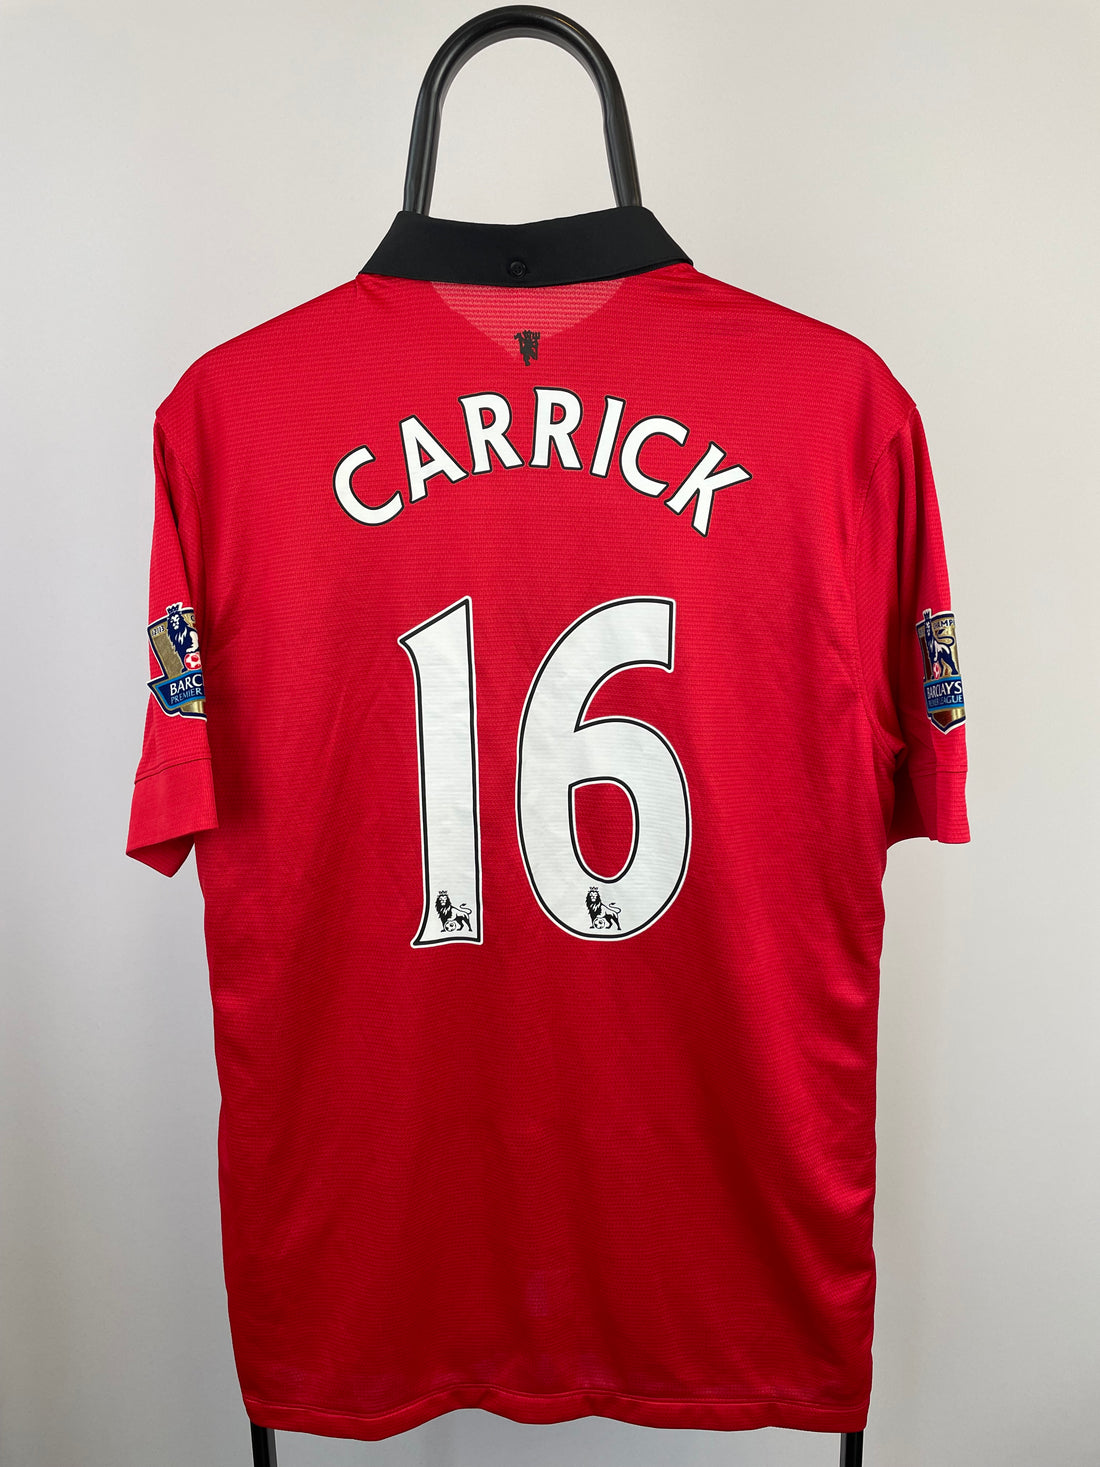 Carrick Manchester United 13/14 hjemmebanetrøje - L